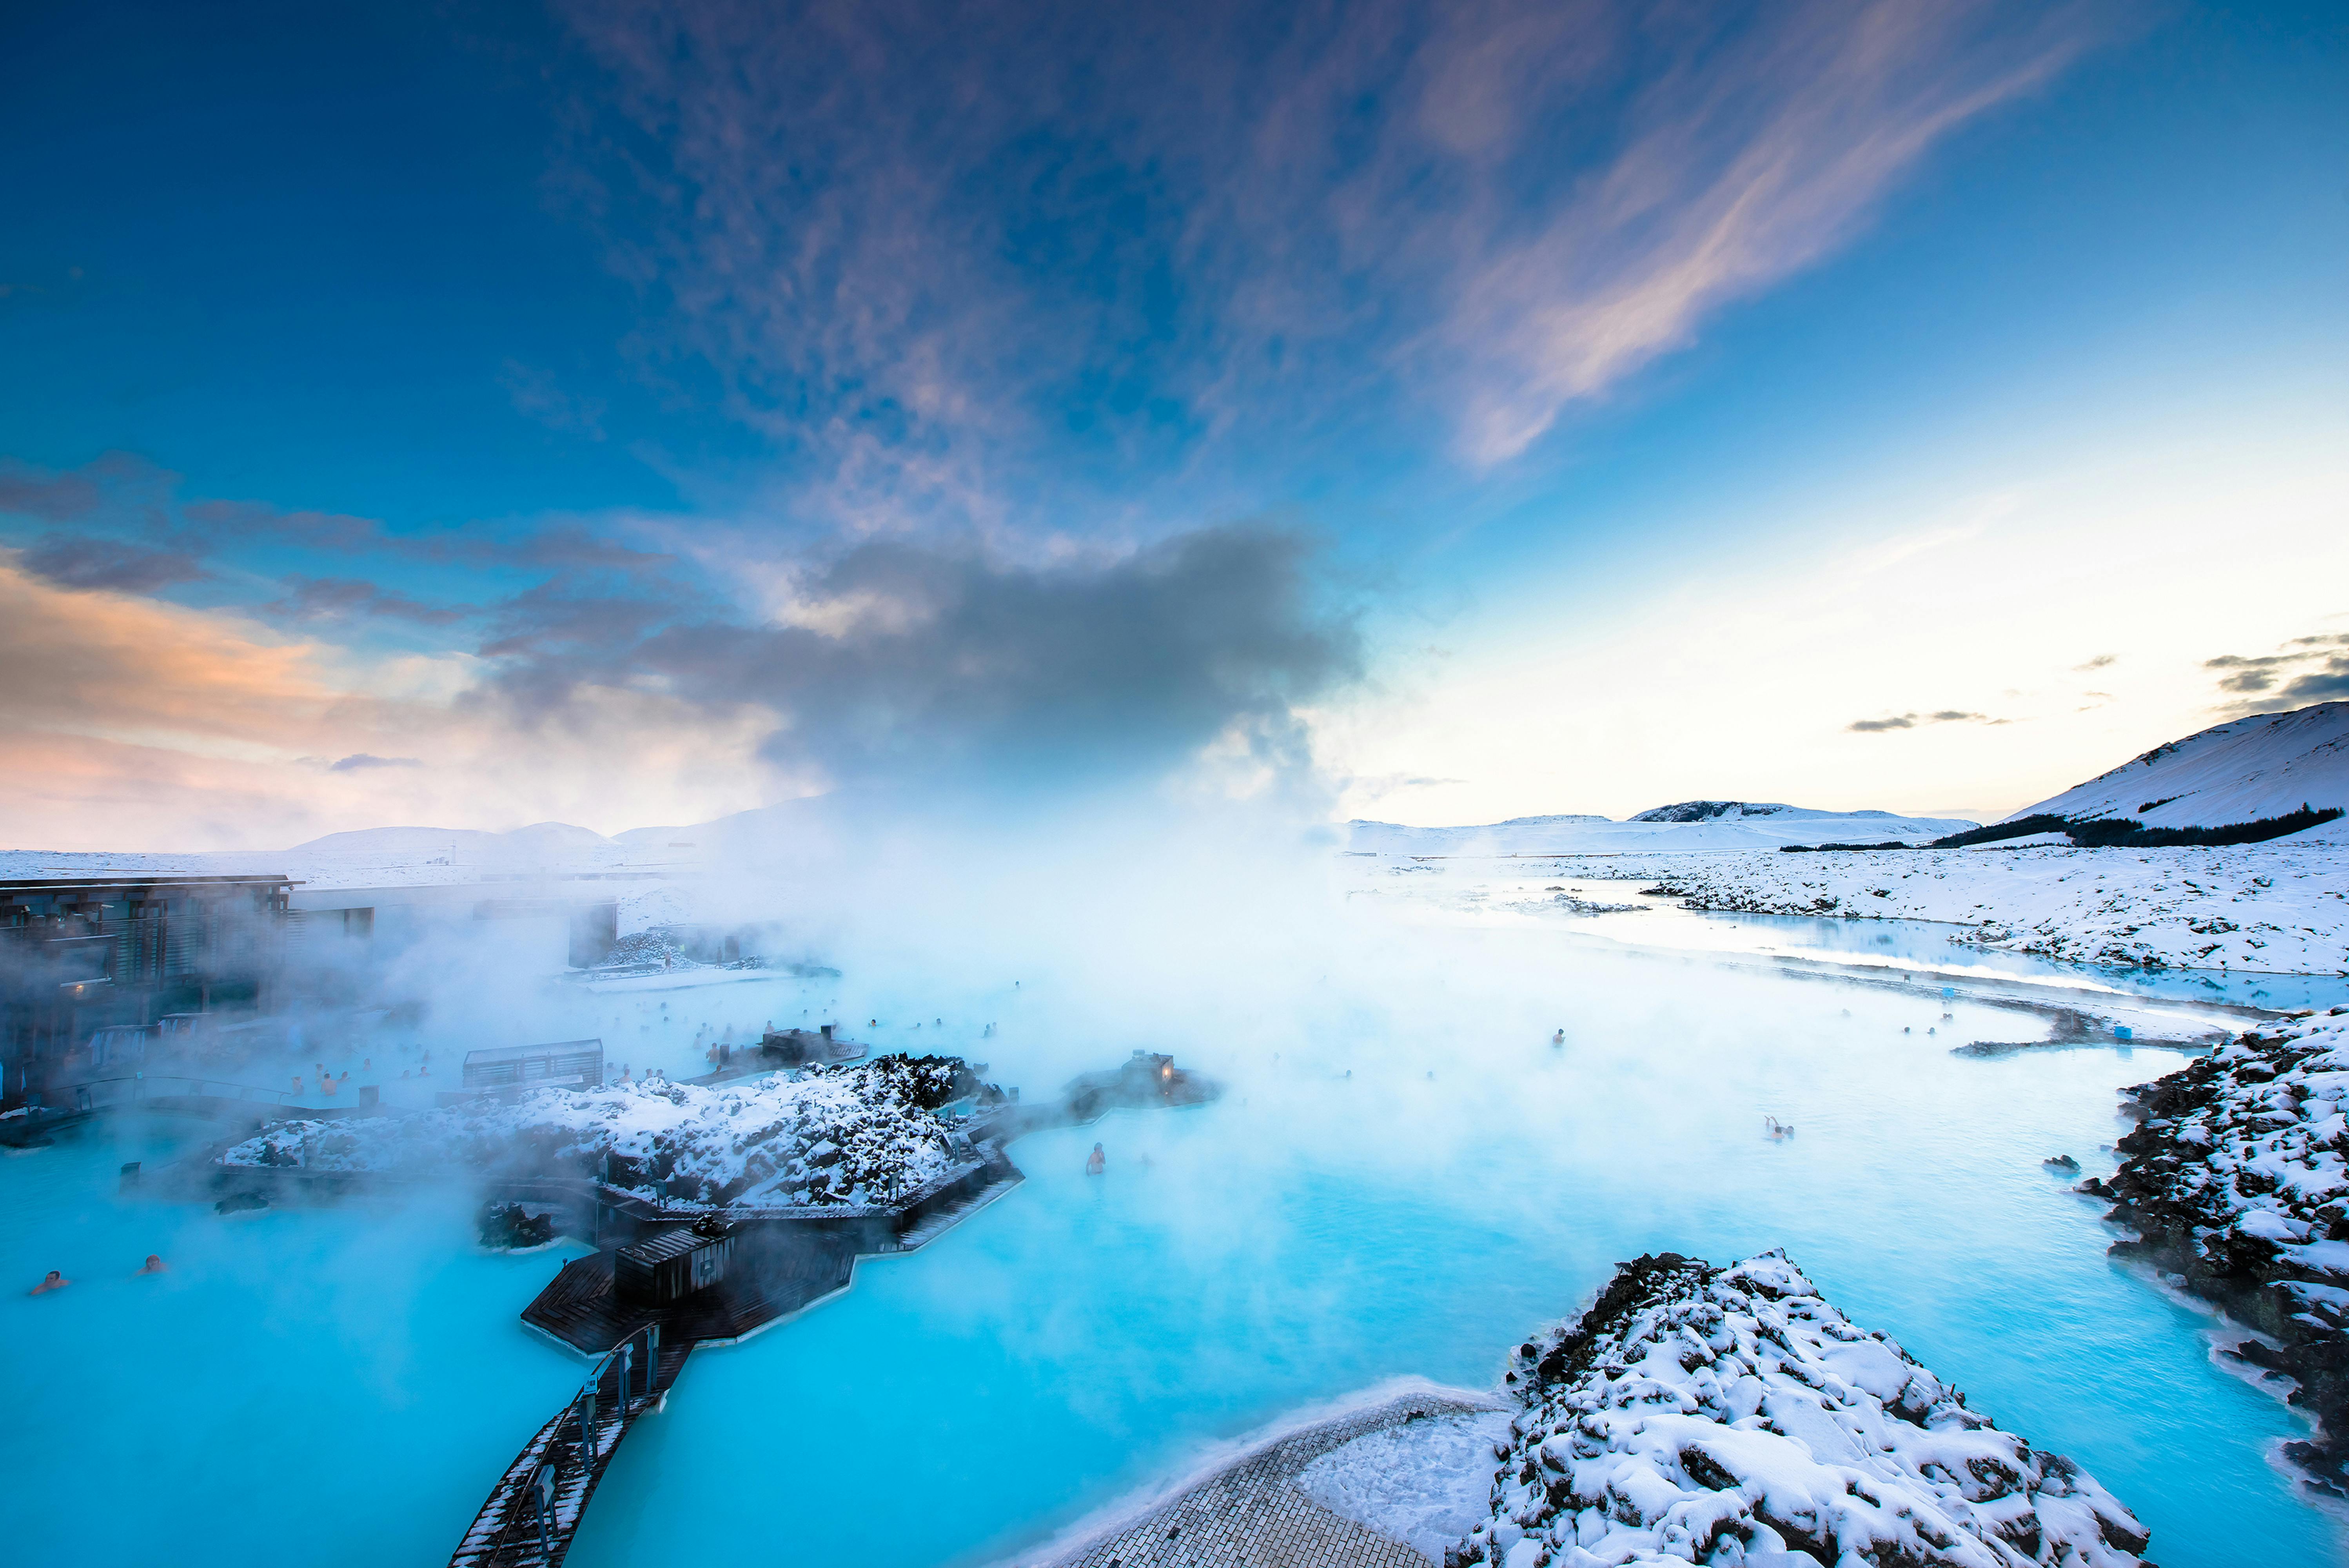 ใช้ชั่วโมงสุดท้ายในไอซ์แลนด์อย่างคุ้มค่าด้วยการไปแช่น้ำในบลูลากูน